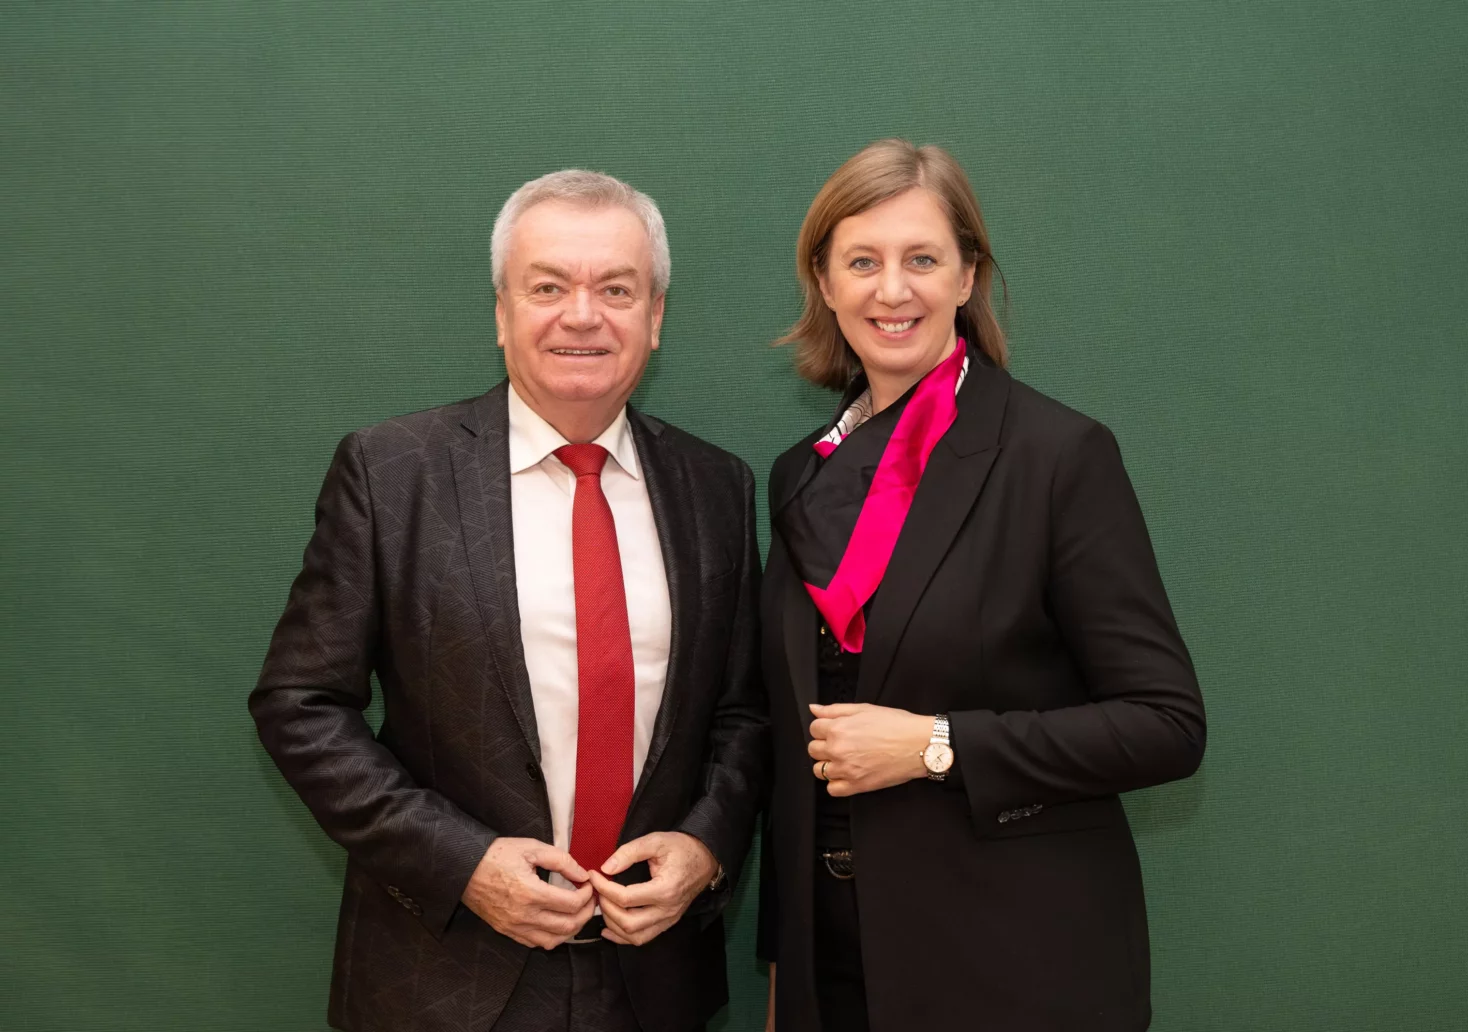 Bild auf 5min.at zeigt zwei steirische Politiker.